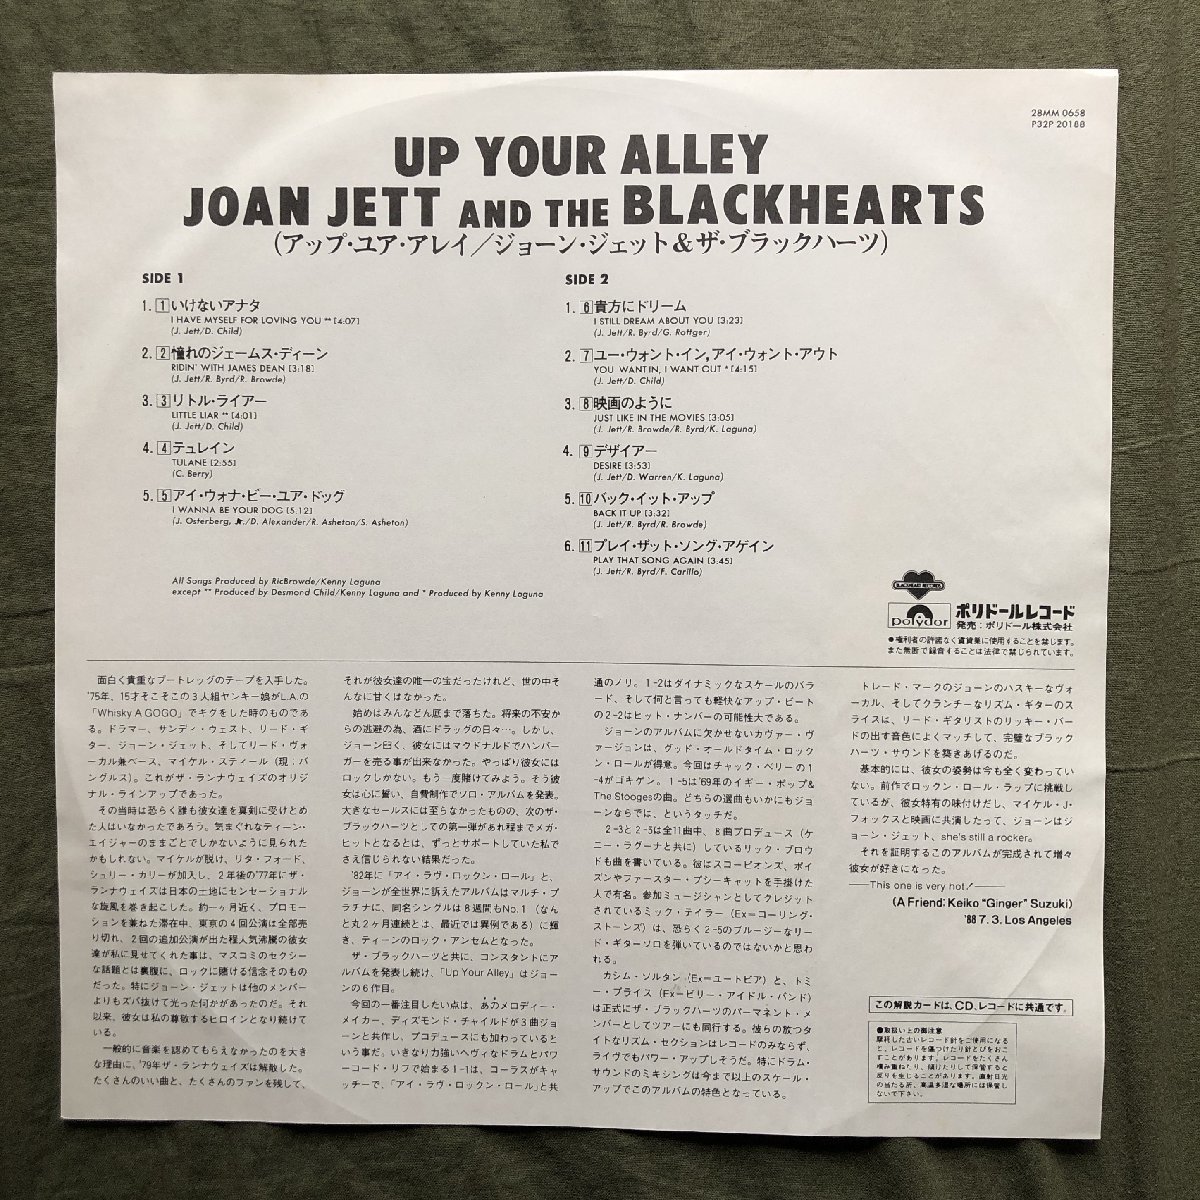 傷なし美盤 プロモ盤 レア盤 1988年 国内初盤 Joan Jett & The Blackhearts LPレコード Up Your Alley 帯付 I Hate Myself for Loving You_画像6